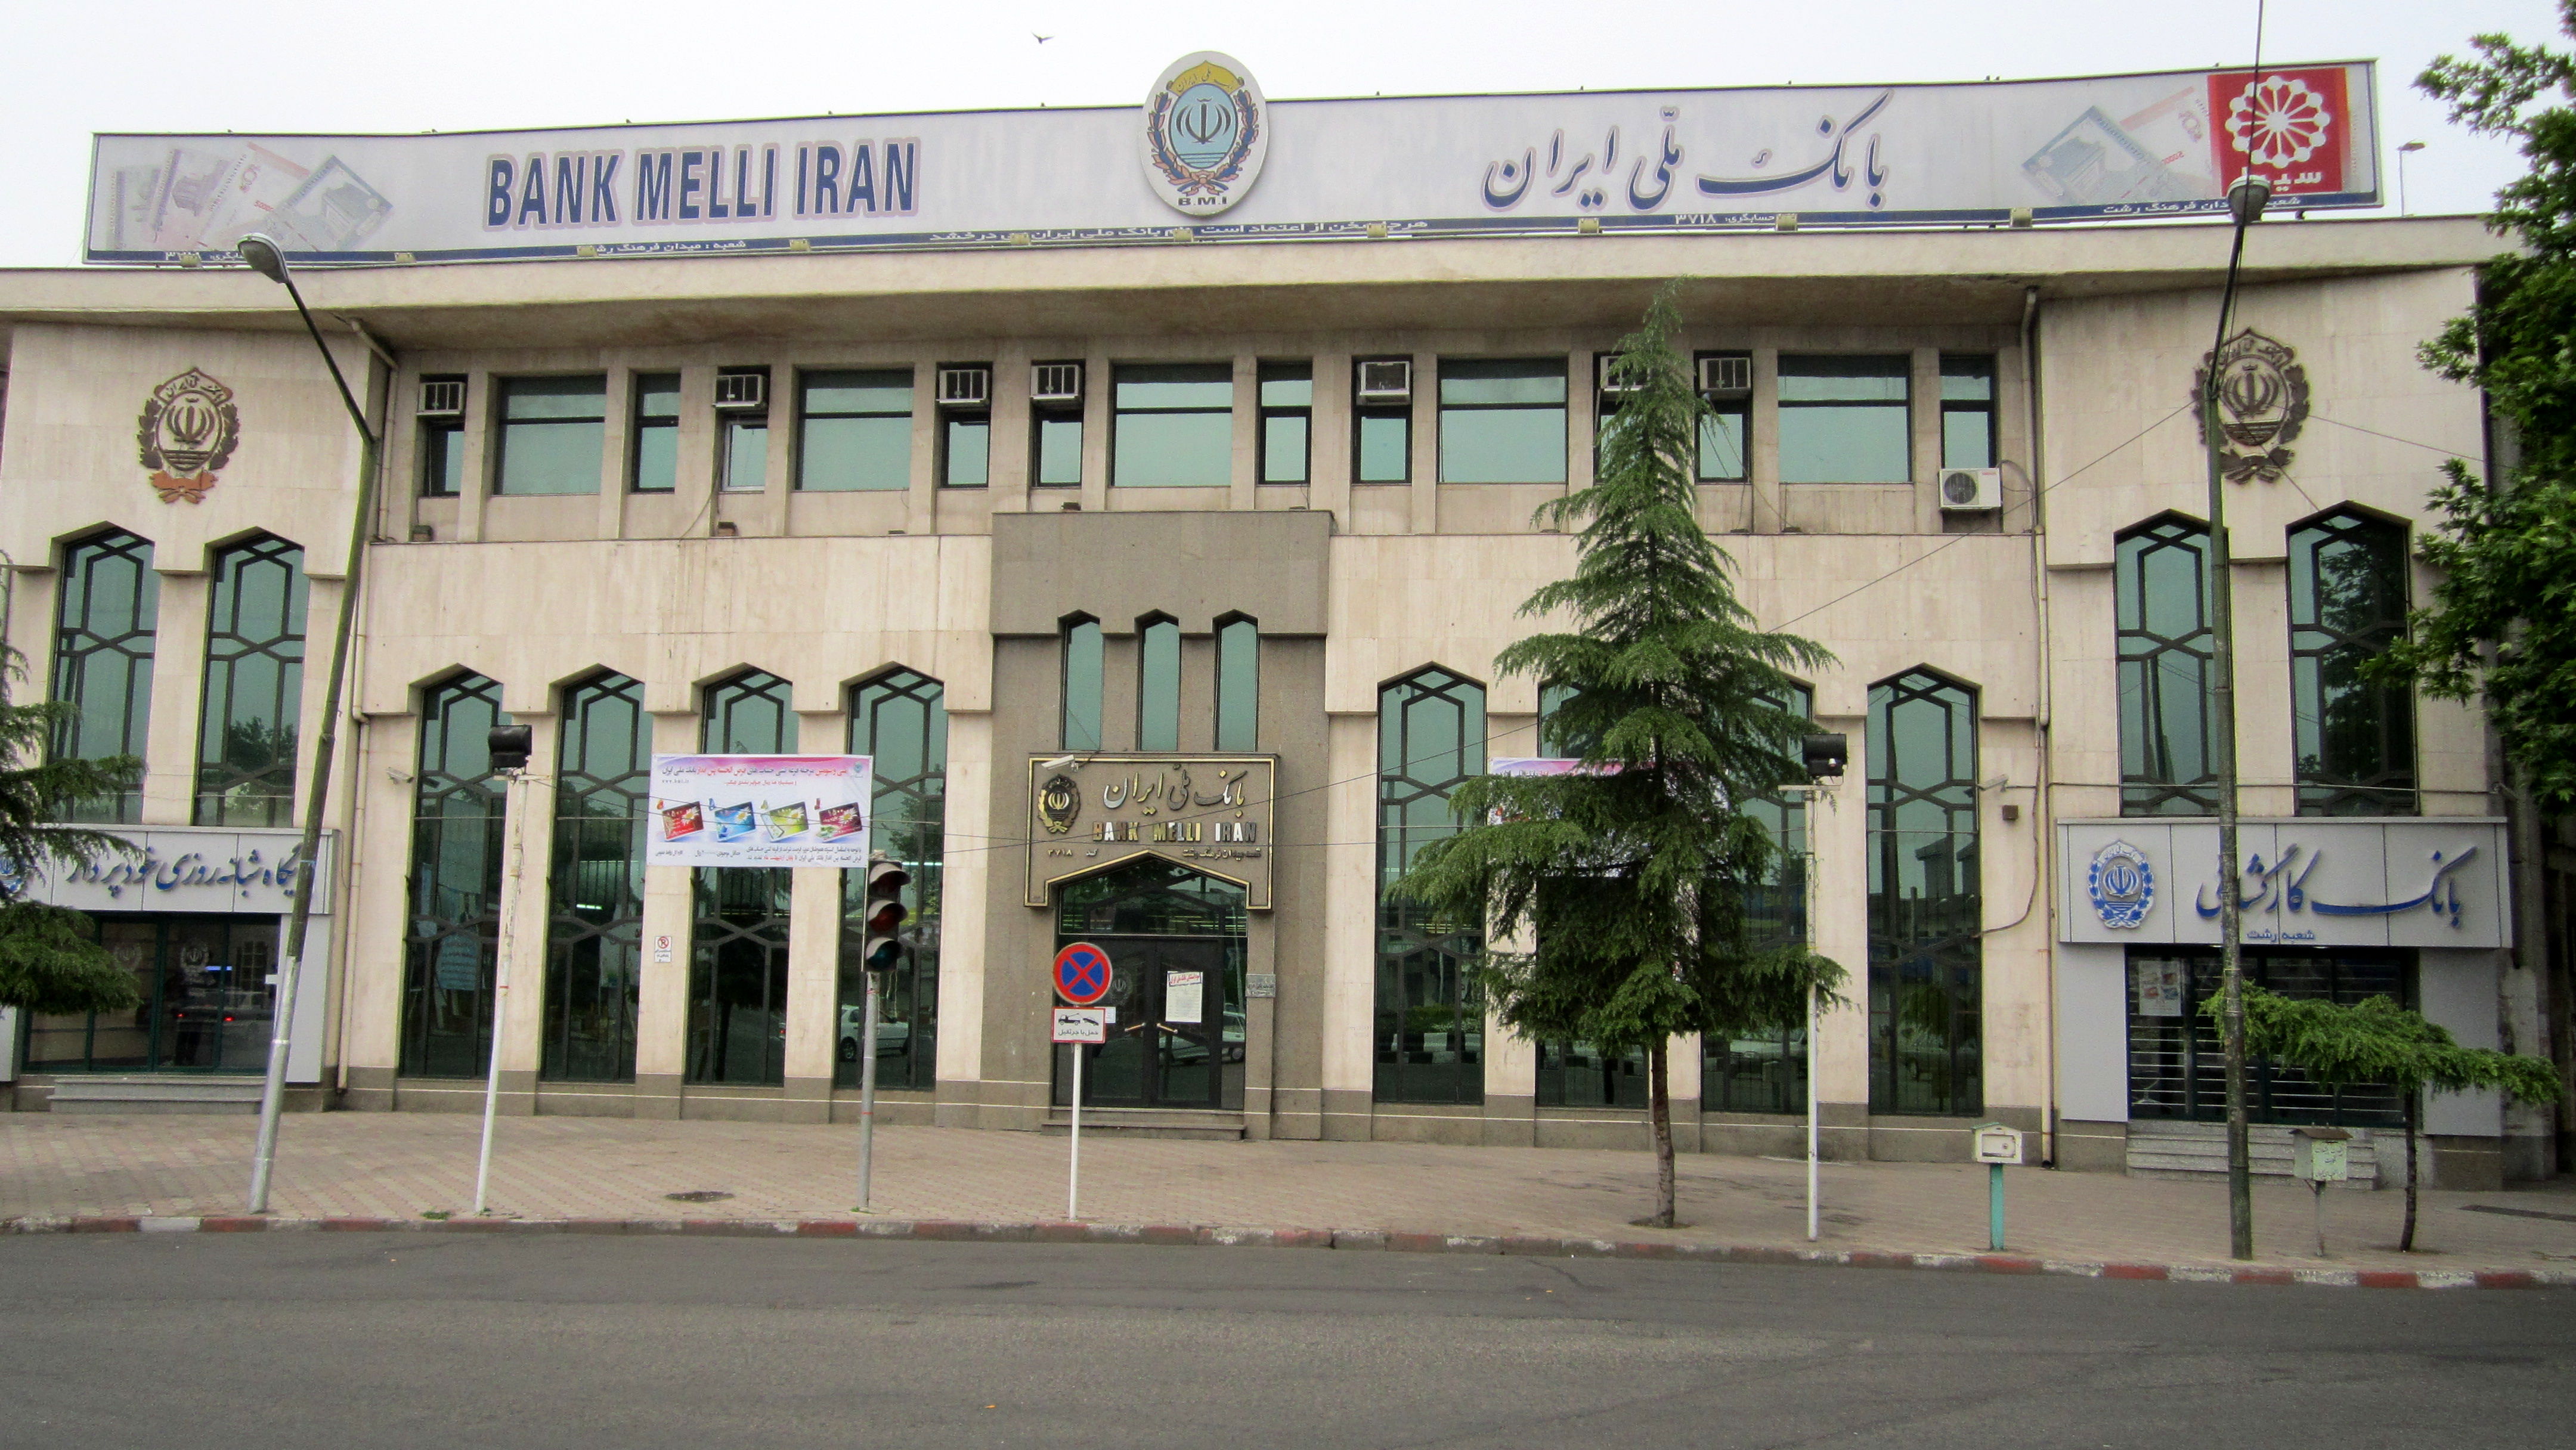 رکورد کاهش مطالبات غیرجاری نظام بانکی در اختیار بانک ملی ایران